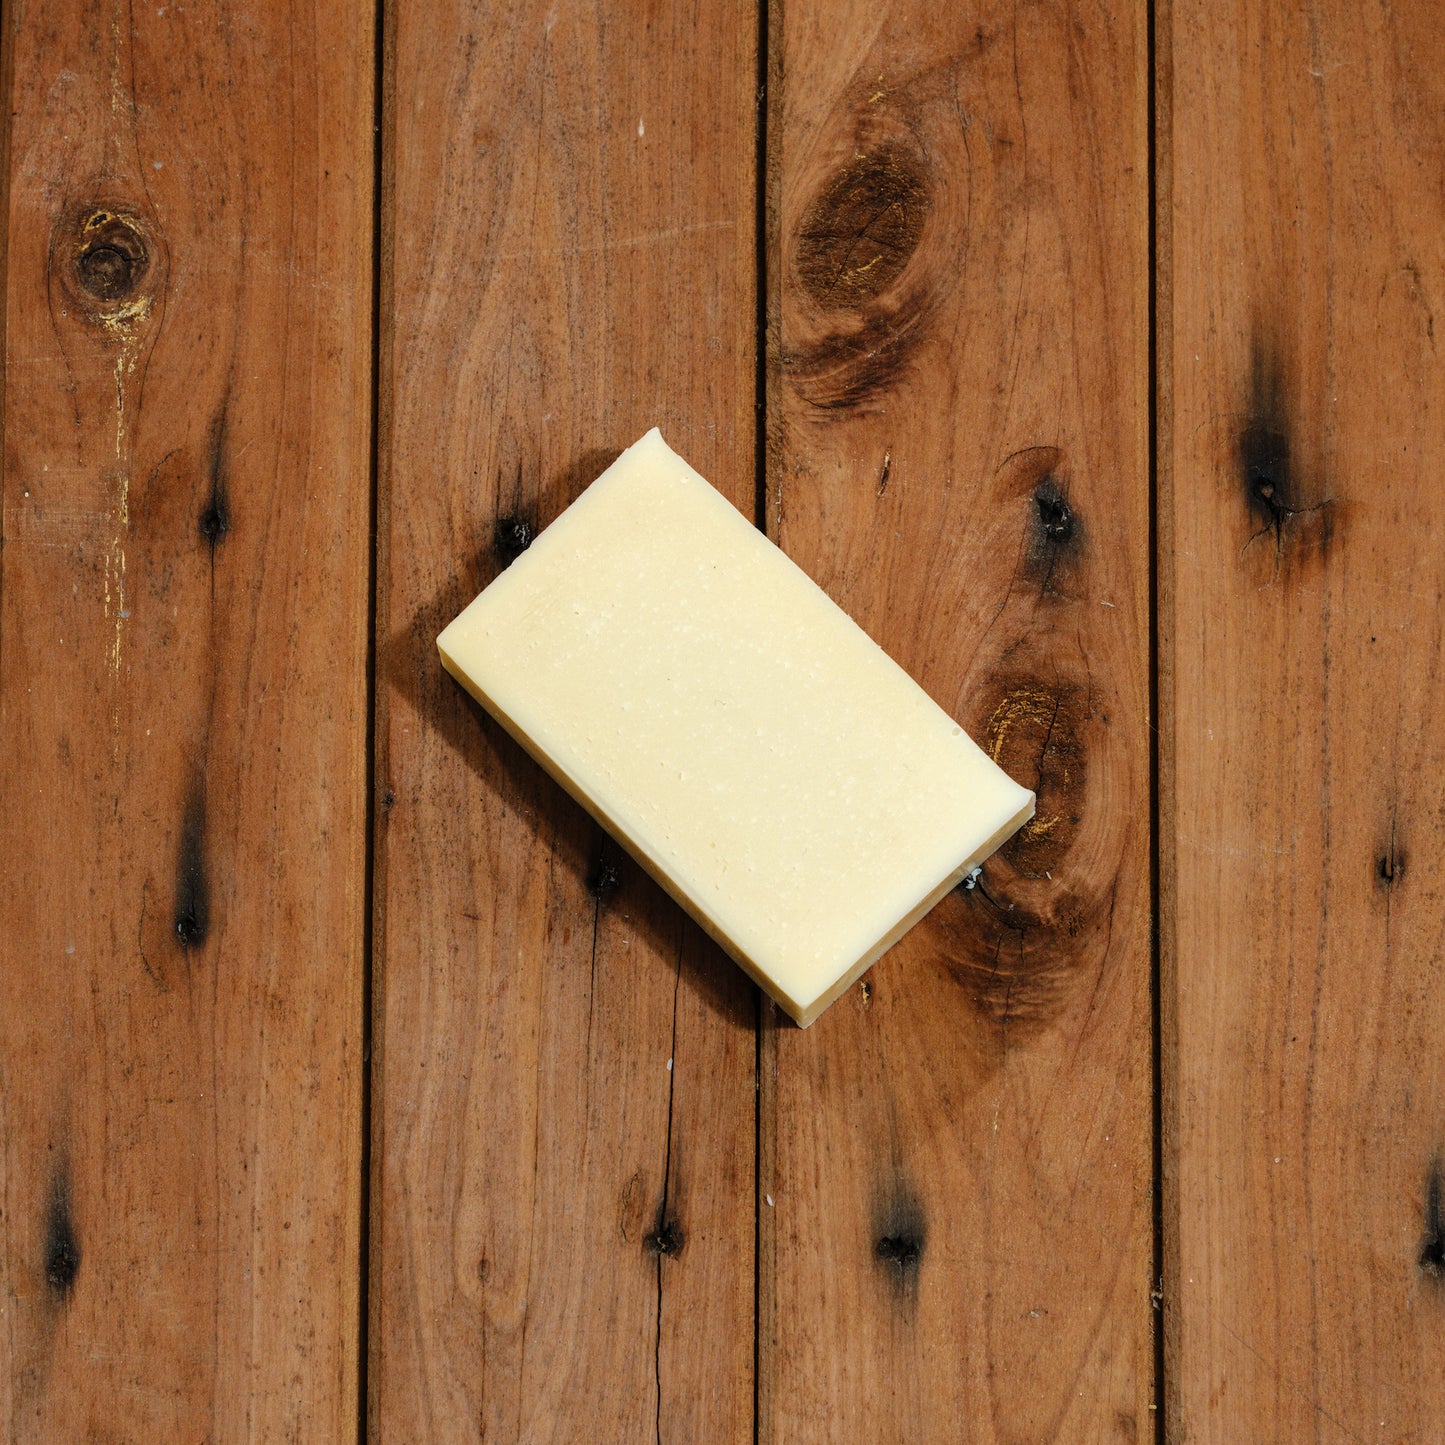 Soap – Sensitive Skin (90g bar)